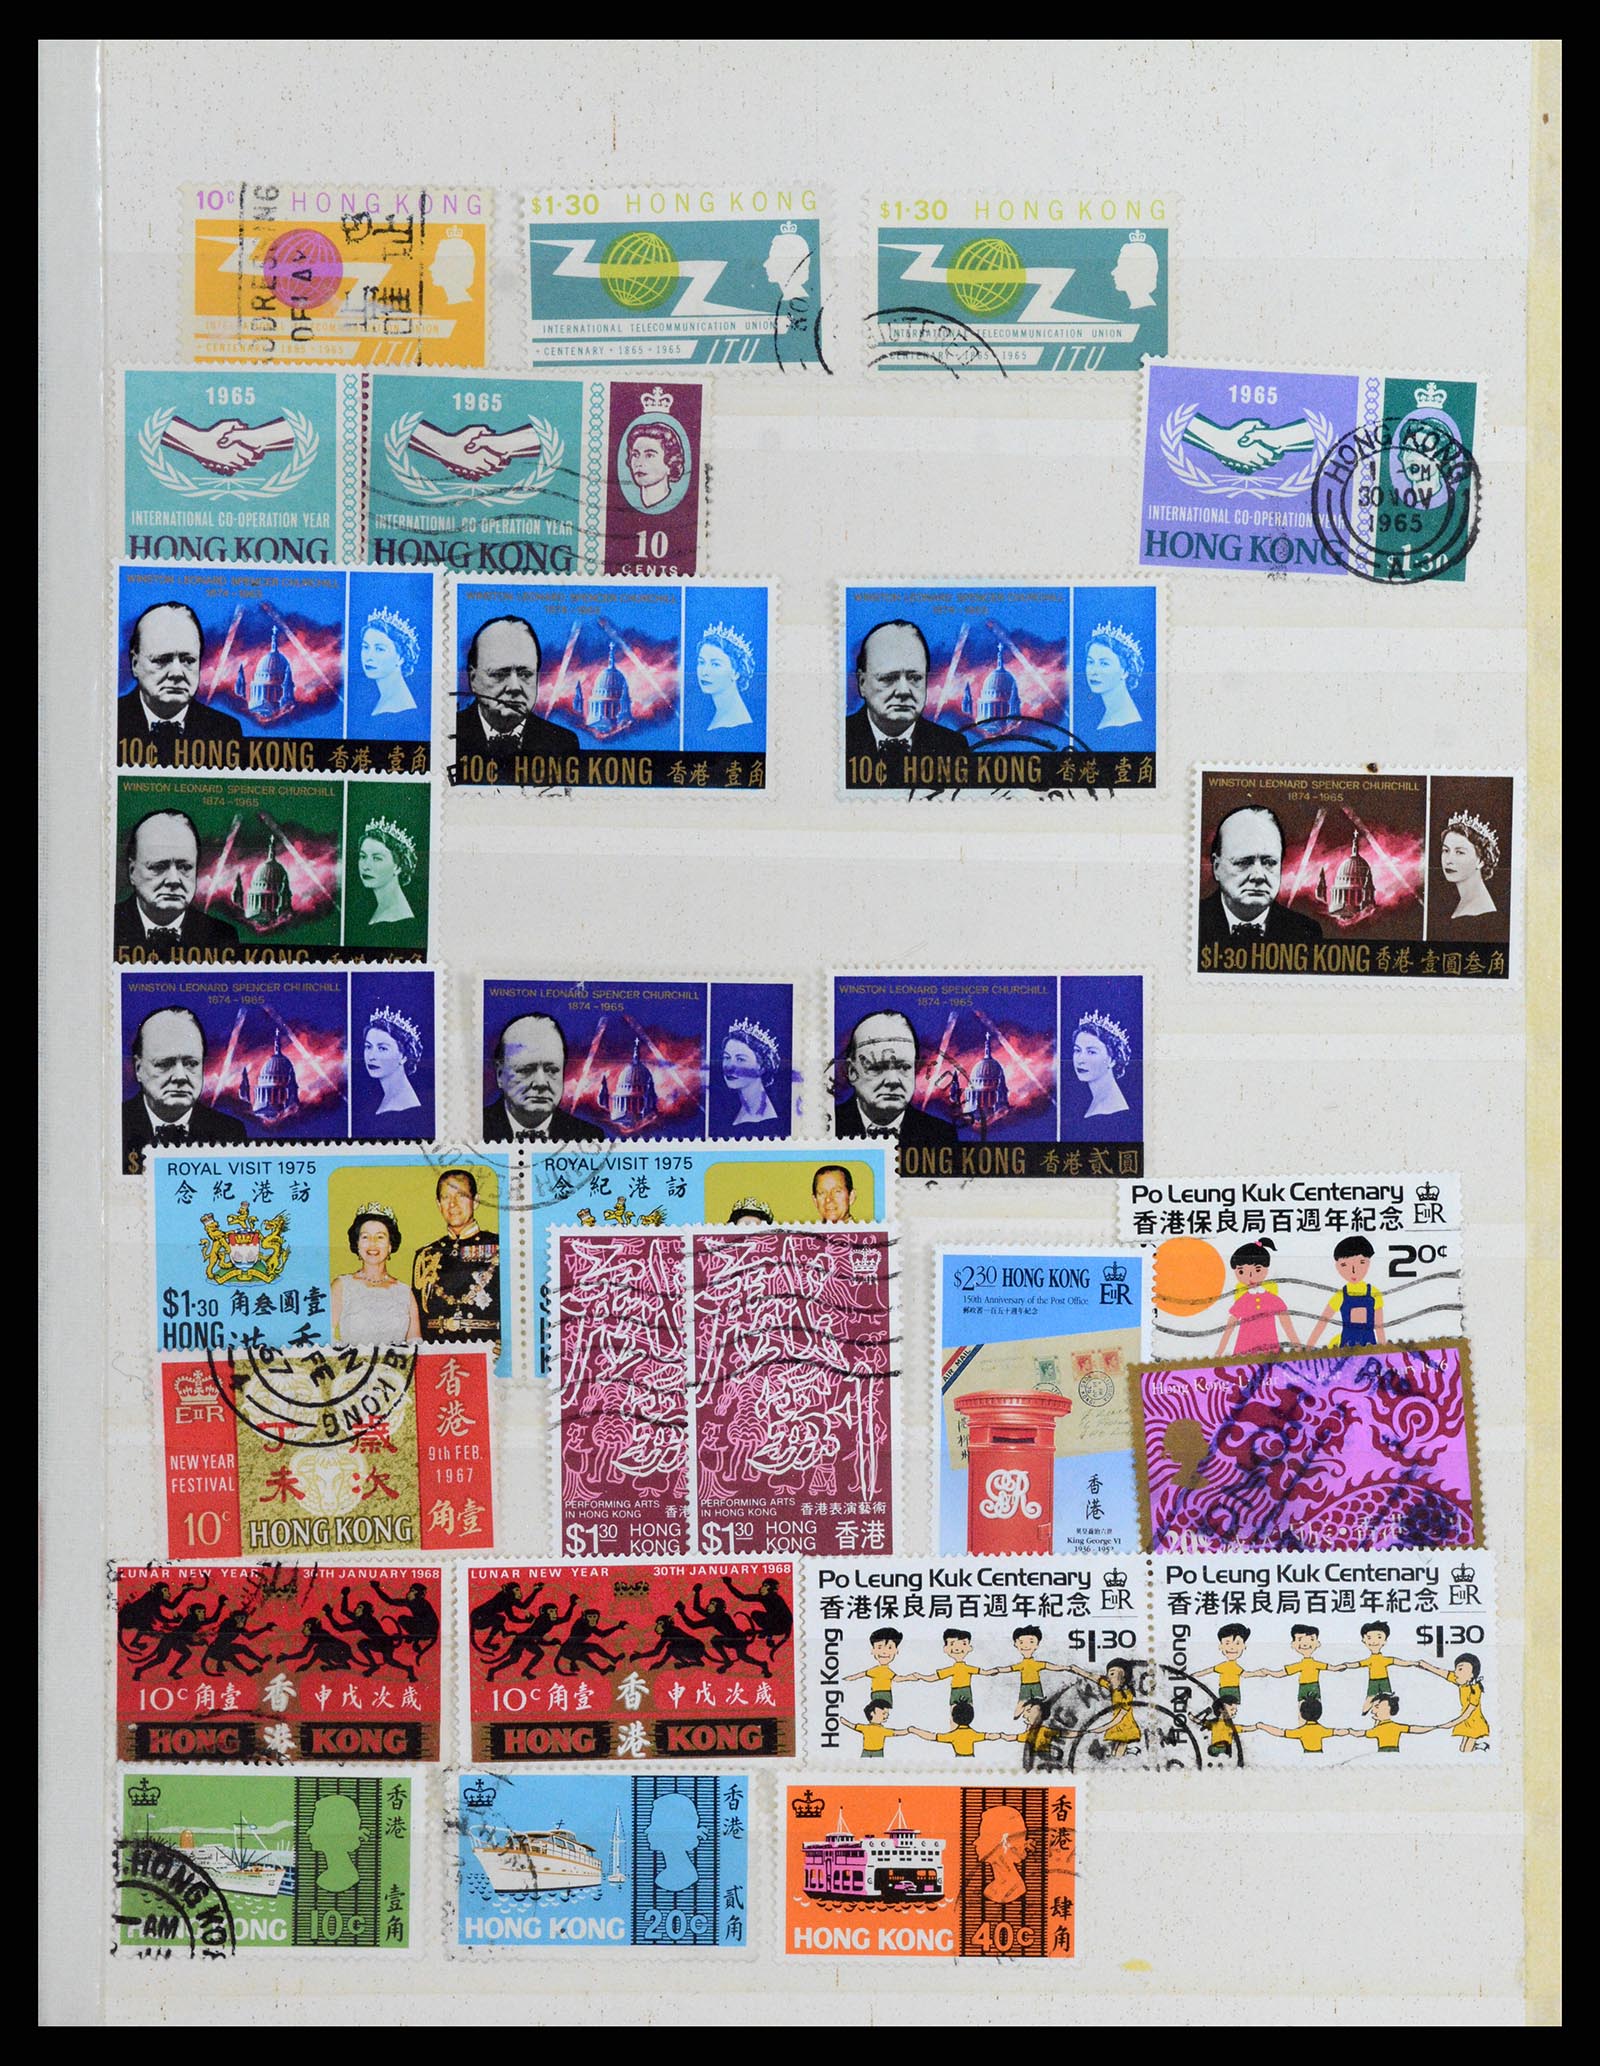 37358 019 - Stamp collection 37358 Hong Kong 1861-1997.